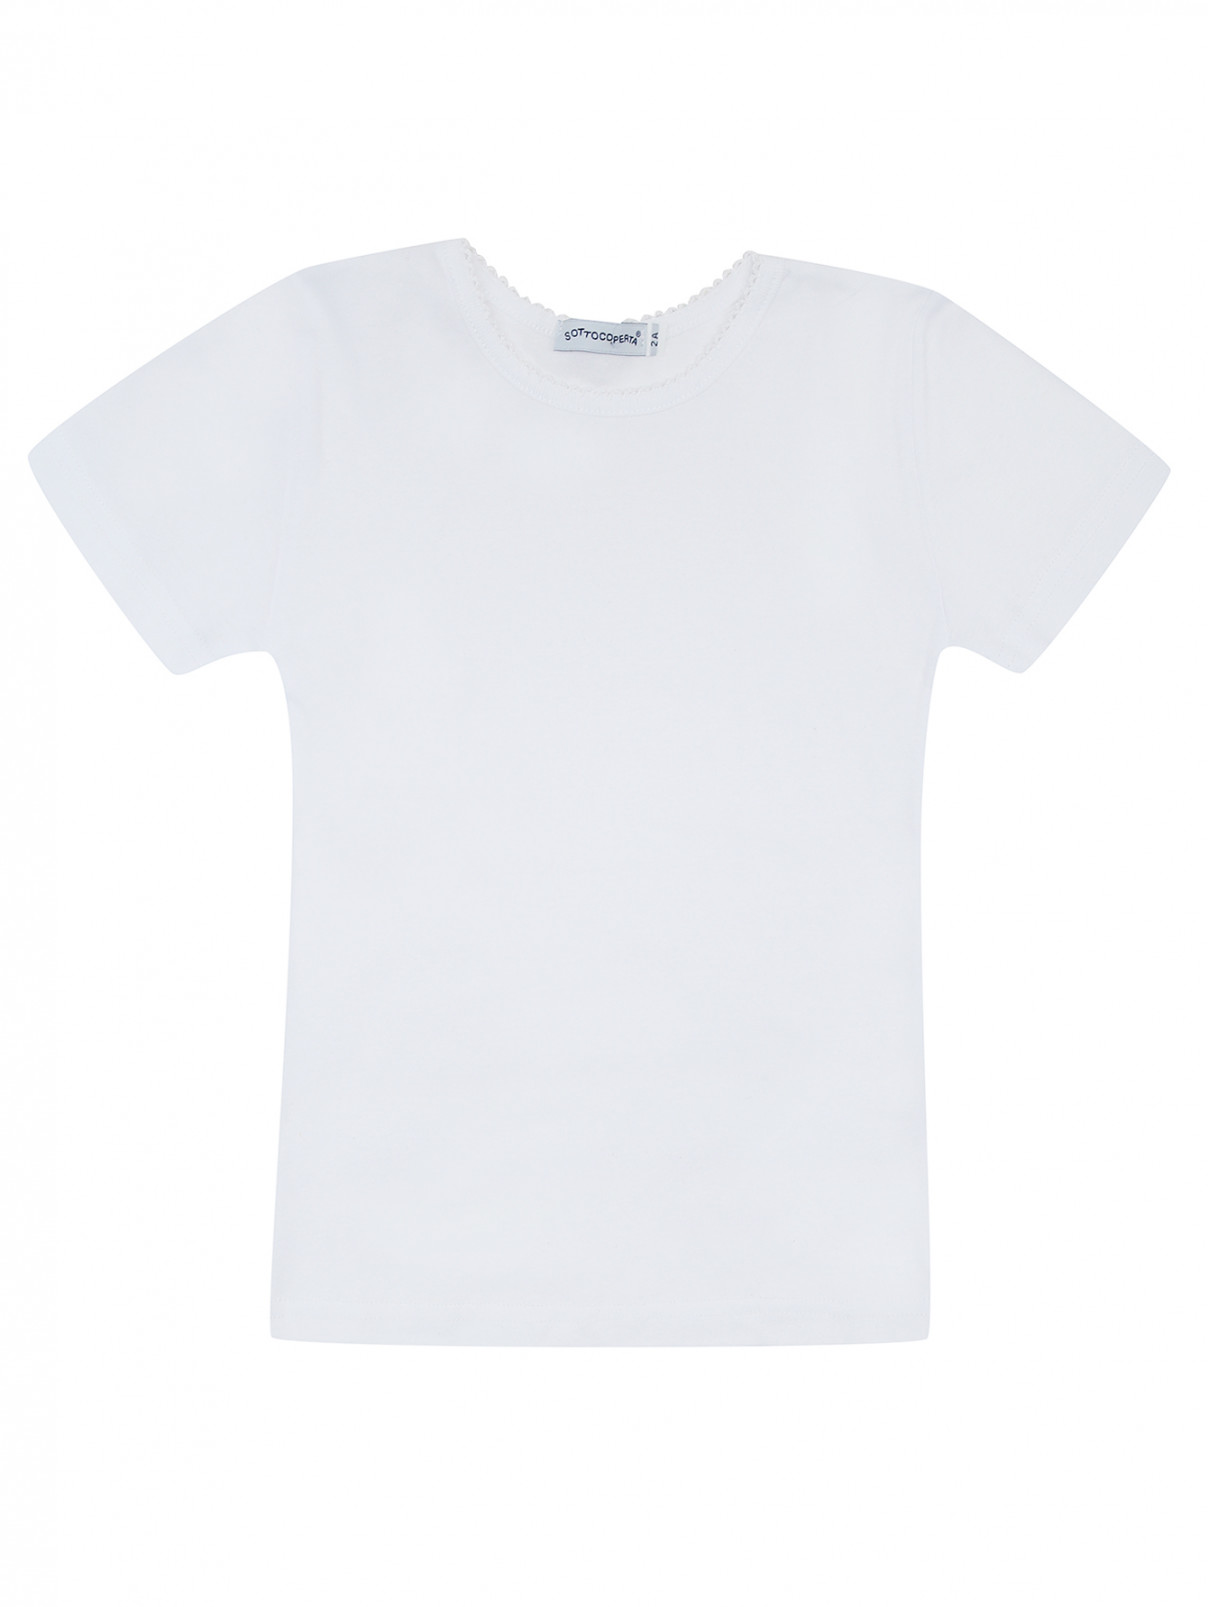 Комплект футболок SOTTOCOPERTA  –  Общий вид  – Цвет:  Белый